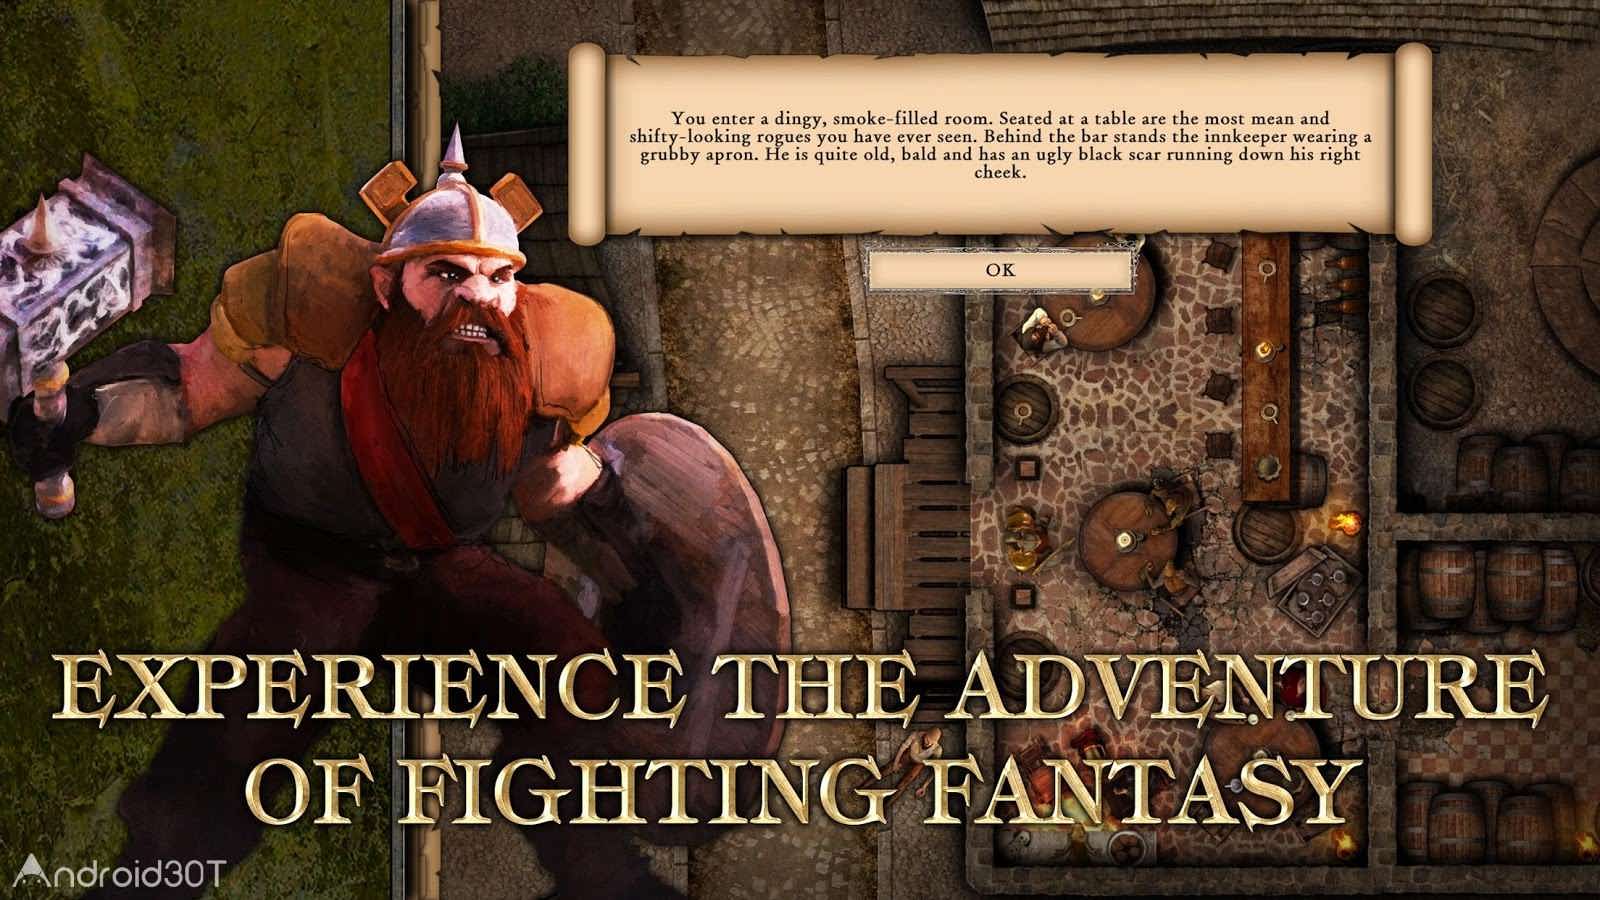 دانلود Fighting Fantasy Legends 1.38 – بازی مبارزه افسانه ای اندروید